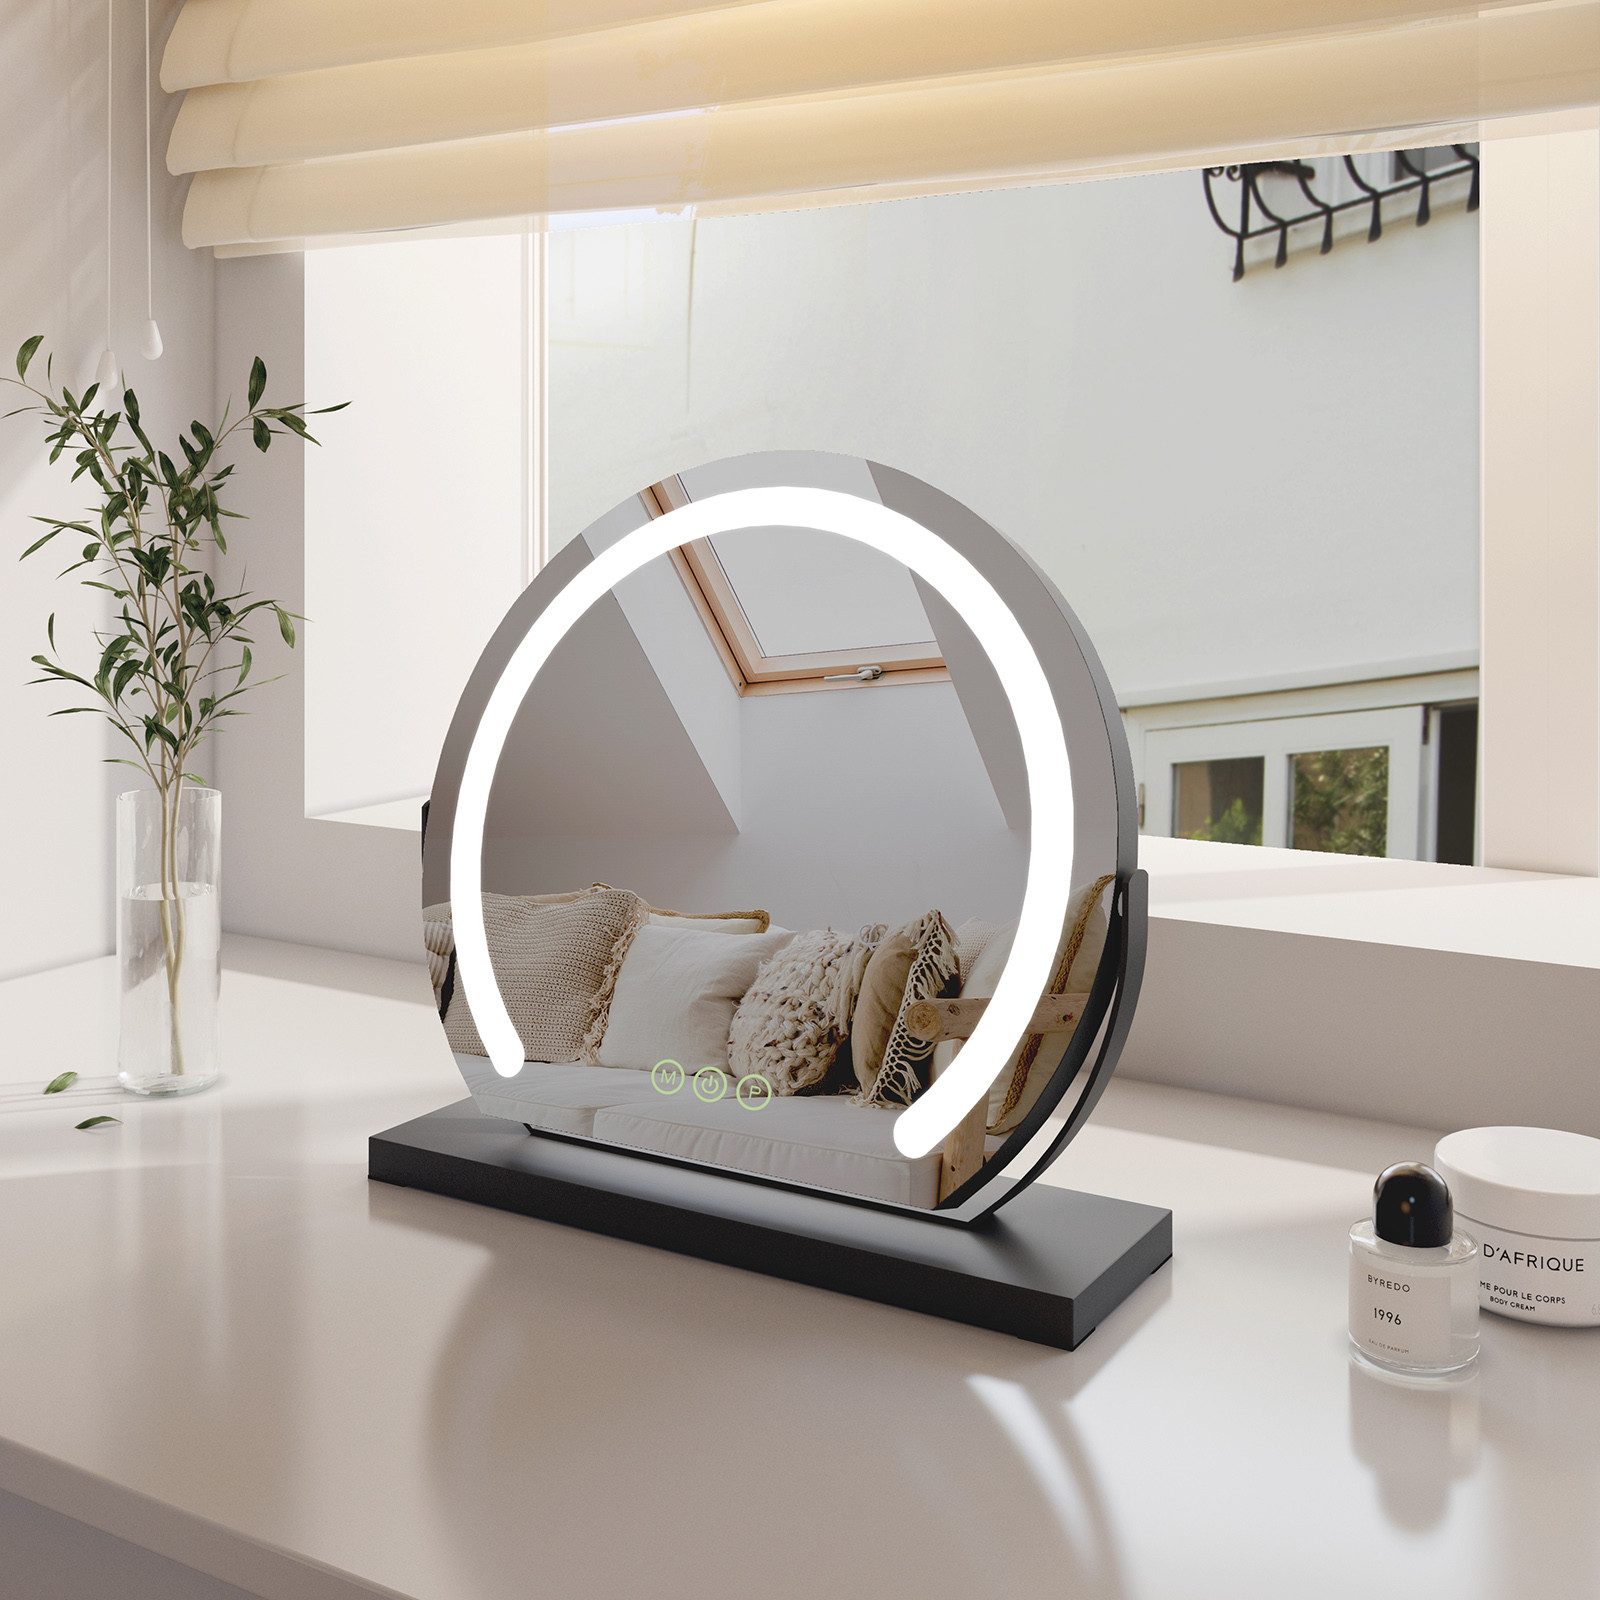 EMKE Kosmetikspiegel mit Beleuchtung Rund Schminkspiegel led Tischspiegel, Schwarz Rahmen 3 Lichtfarben,Dimmbar, 360° Drehbar